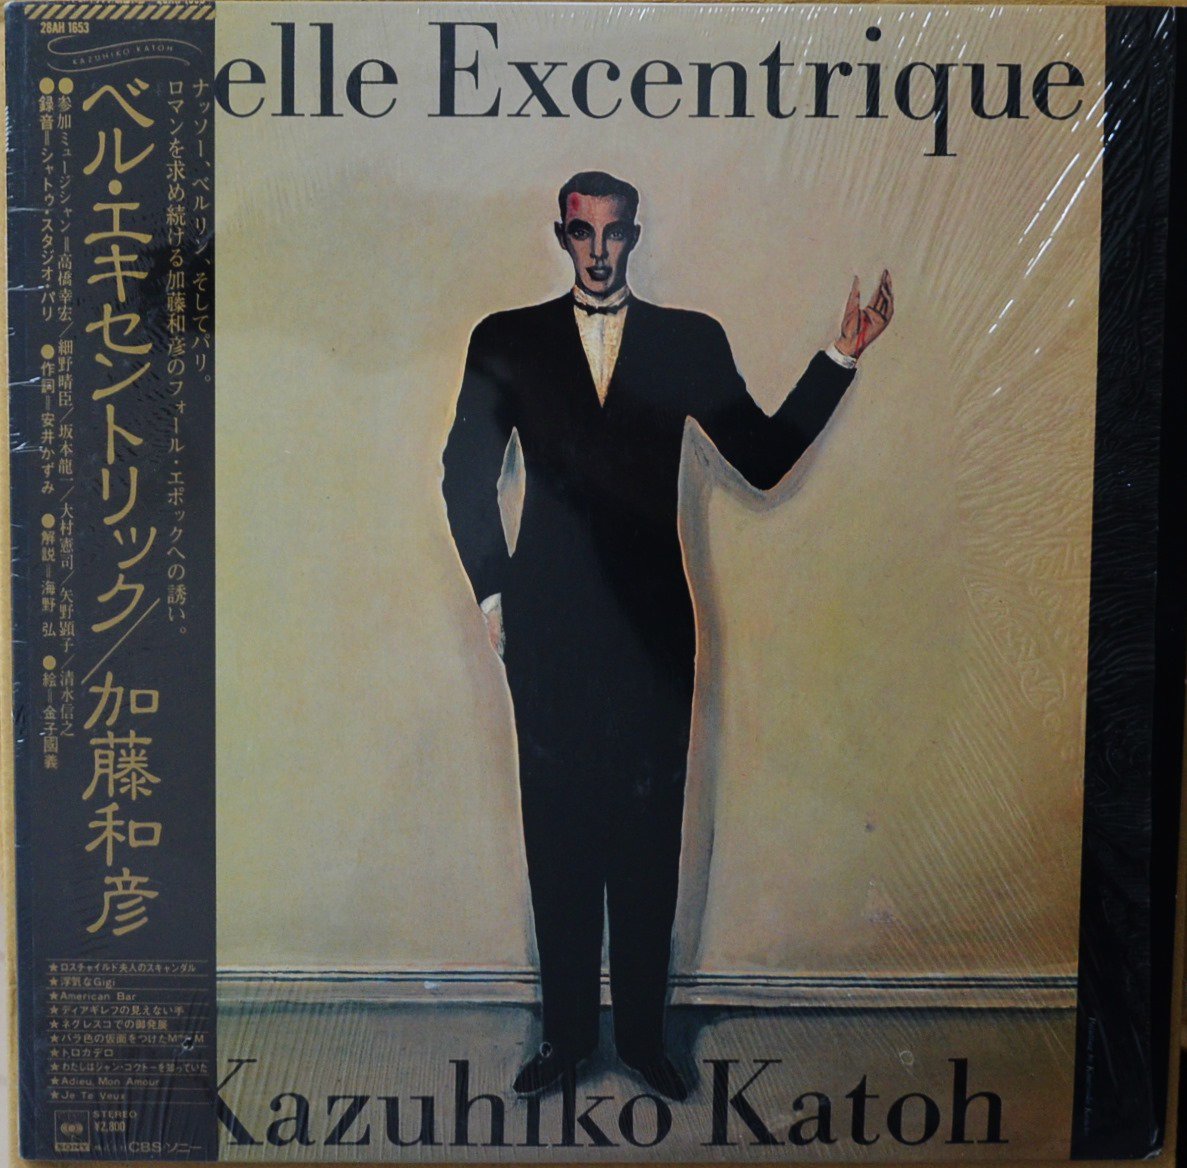 加藤和彦 KAZUHIKO KATOH / ベル・エキセントリック BELLE EXCENTRIQUE (LP)